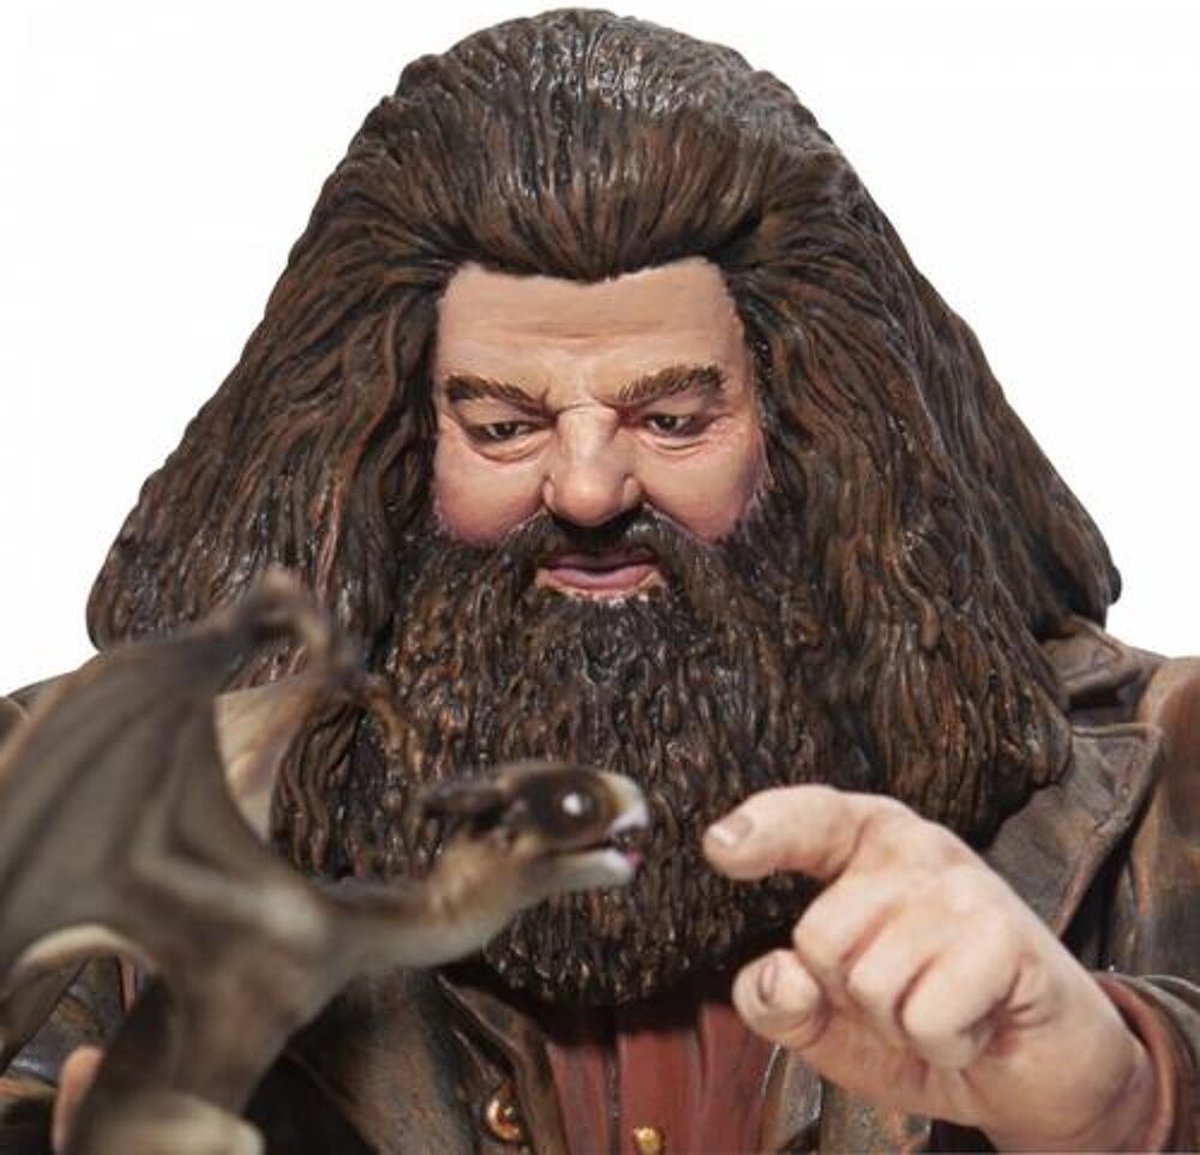 Harry Potter Hagrid Charm Figurine